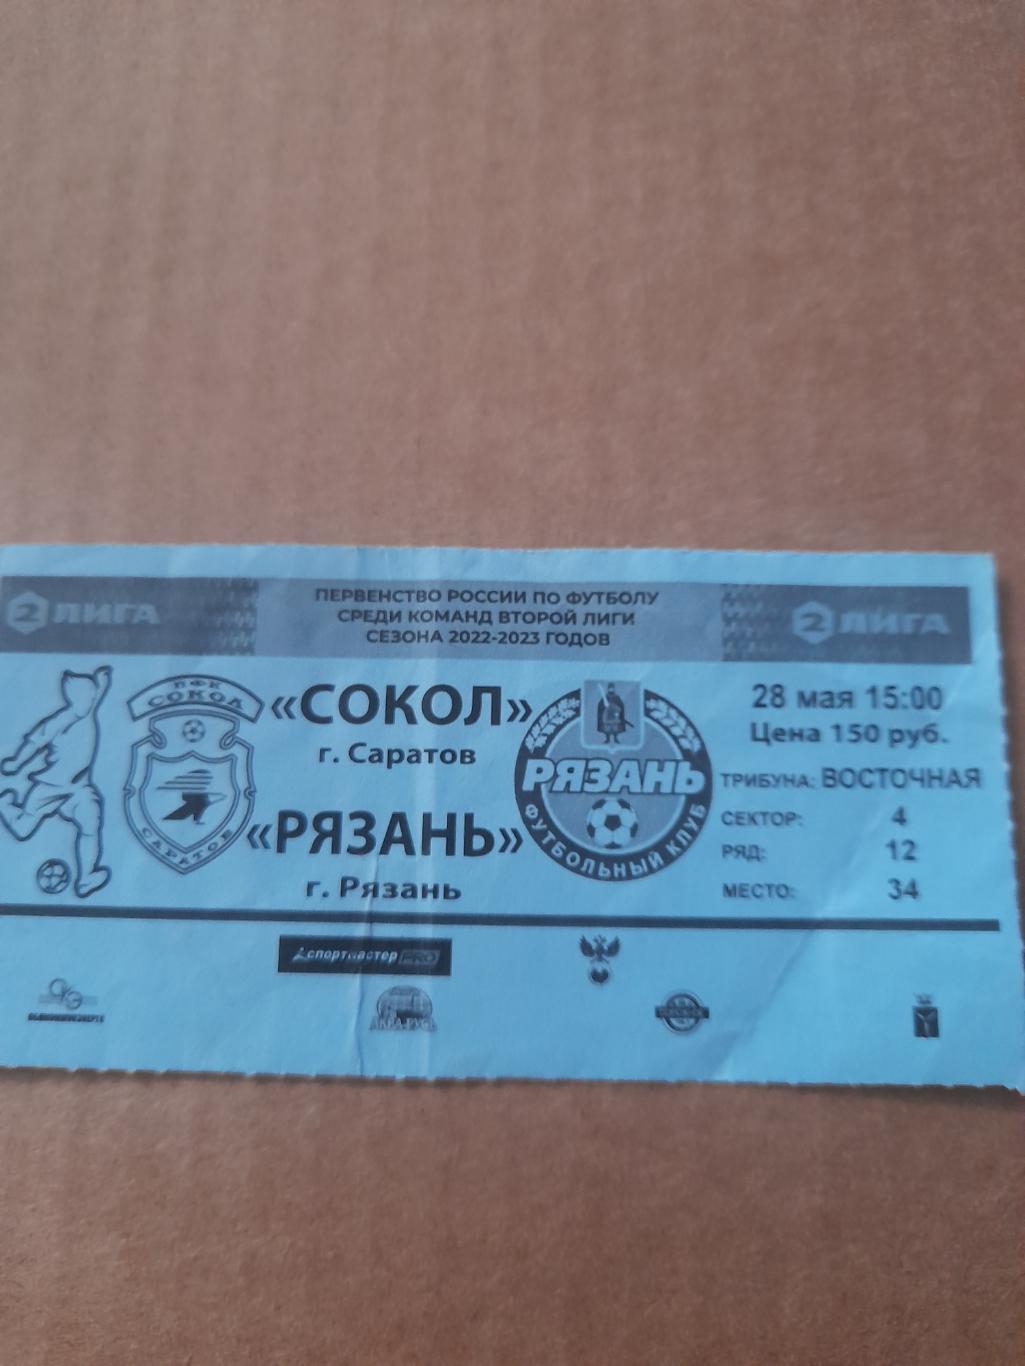 Сокол саратов - Рязань 2023 билет